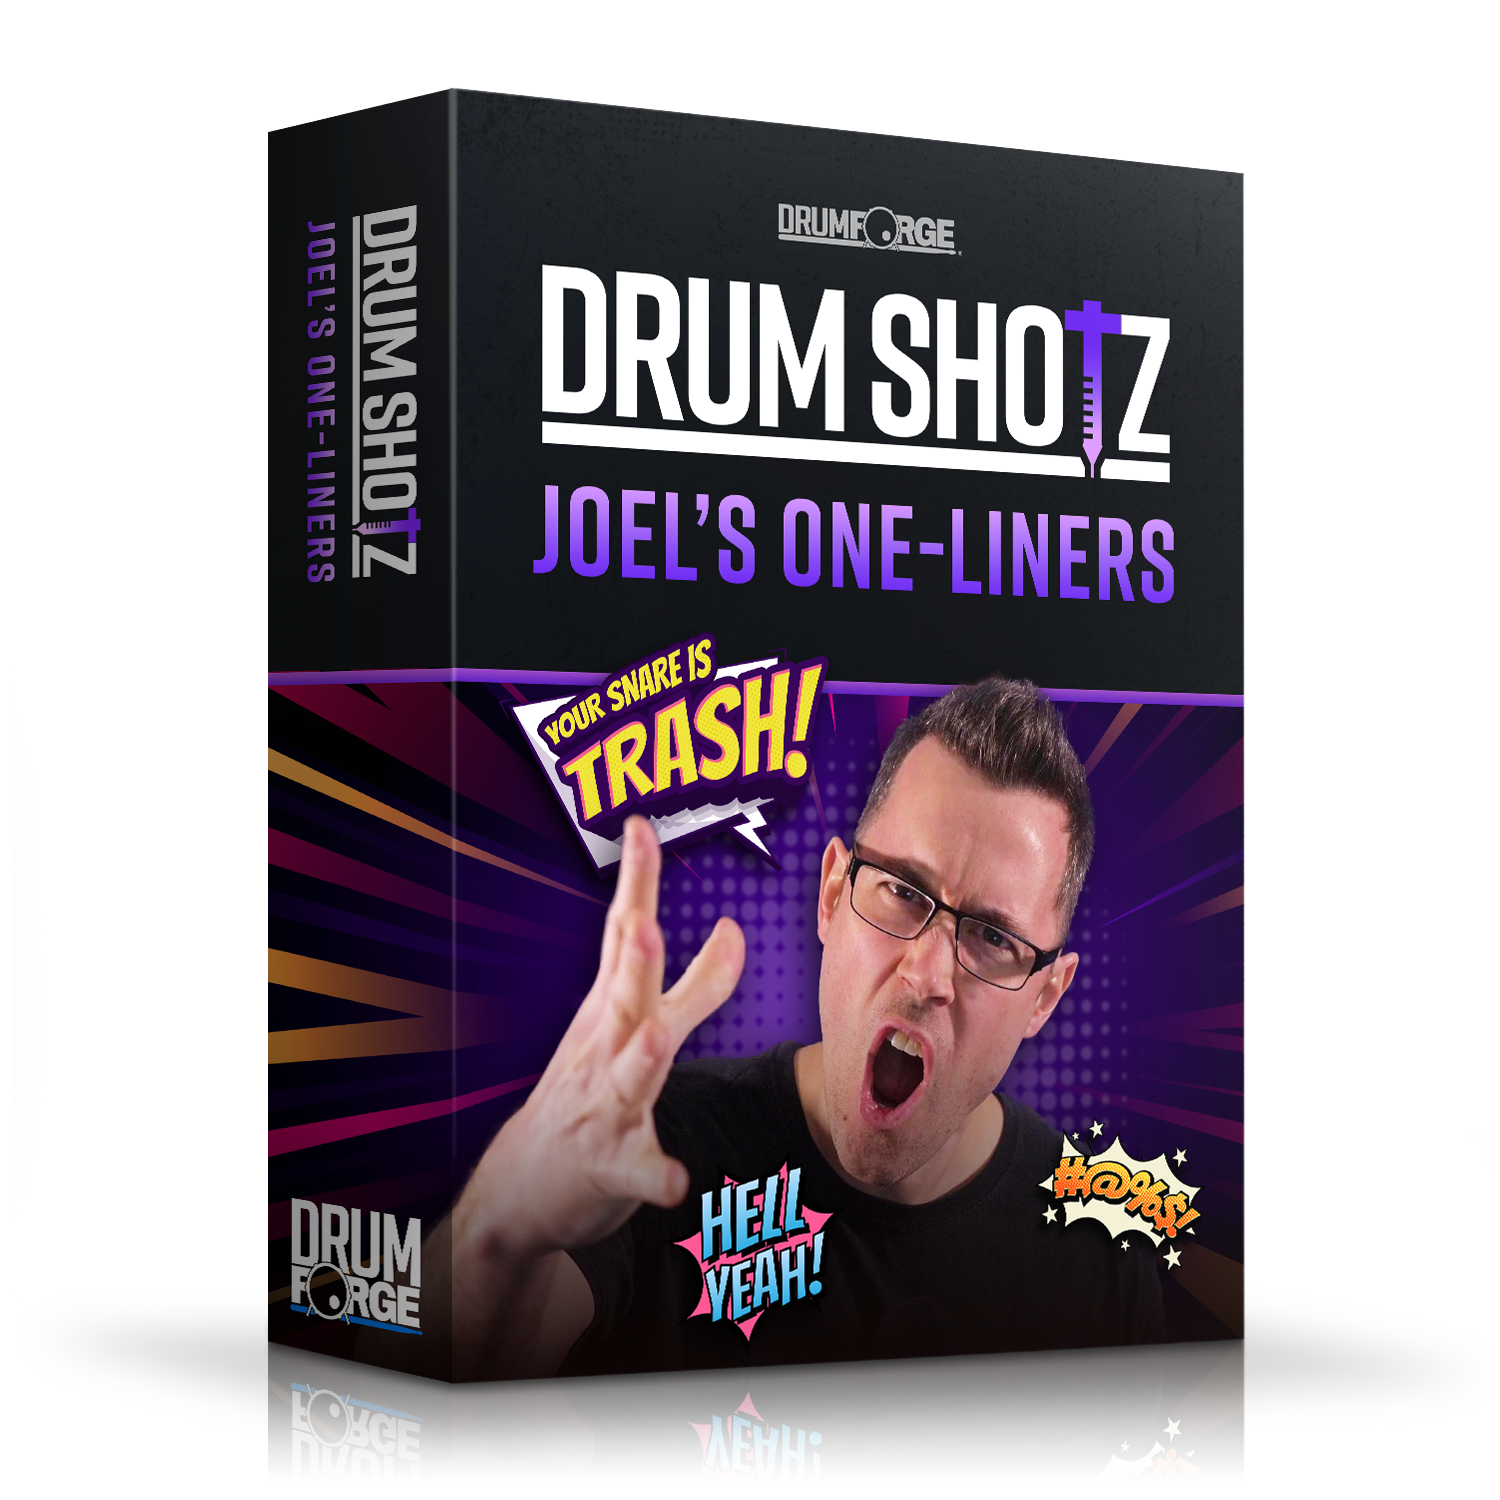 Drumshotz Joel Wanasek One-Liners